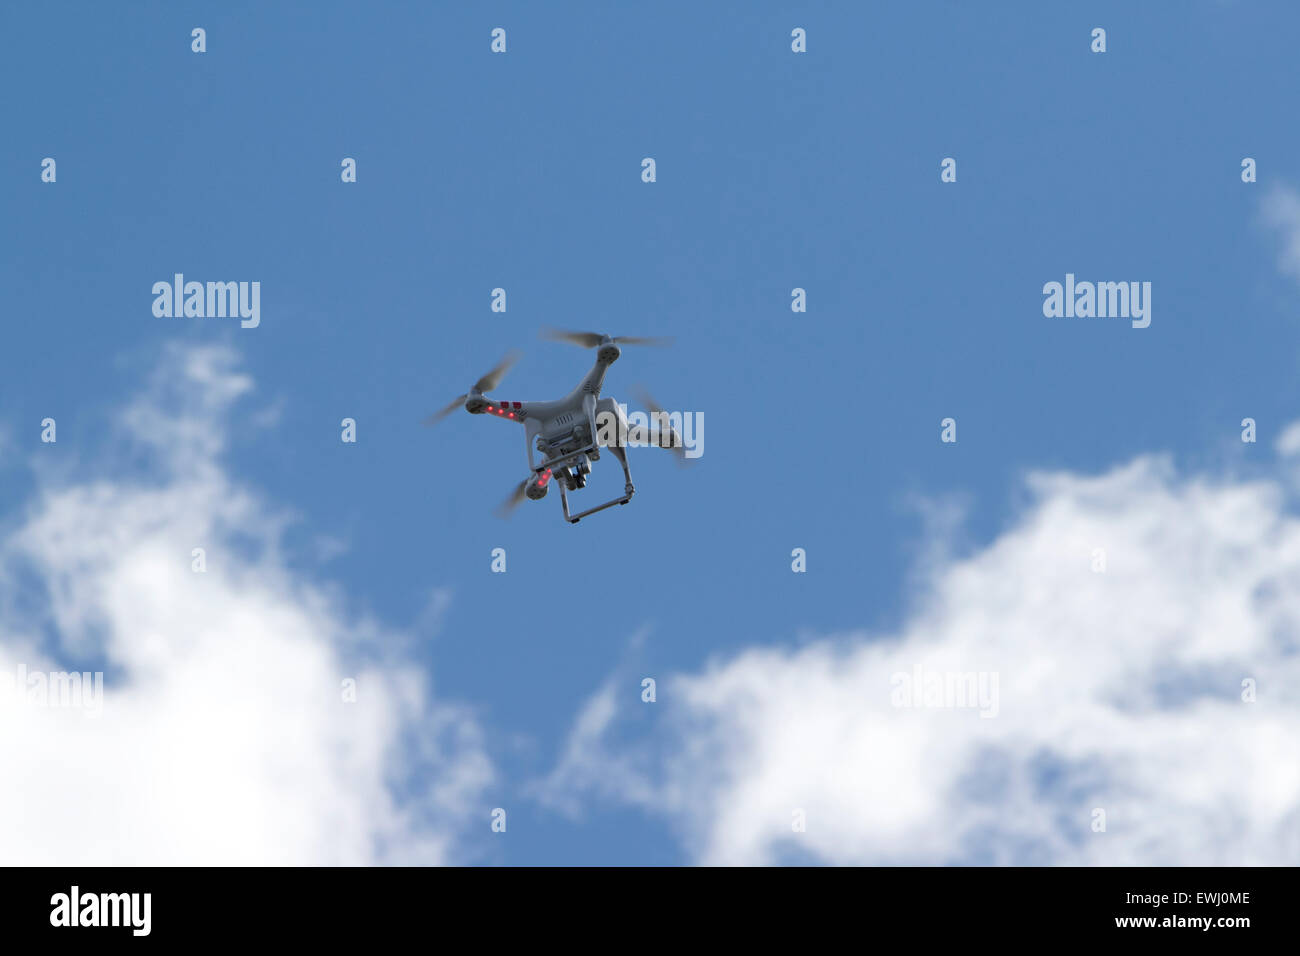 Dji remoto fantasma cámara drone volando contra el cielo azul Foto de stock